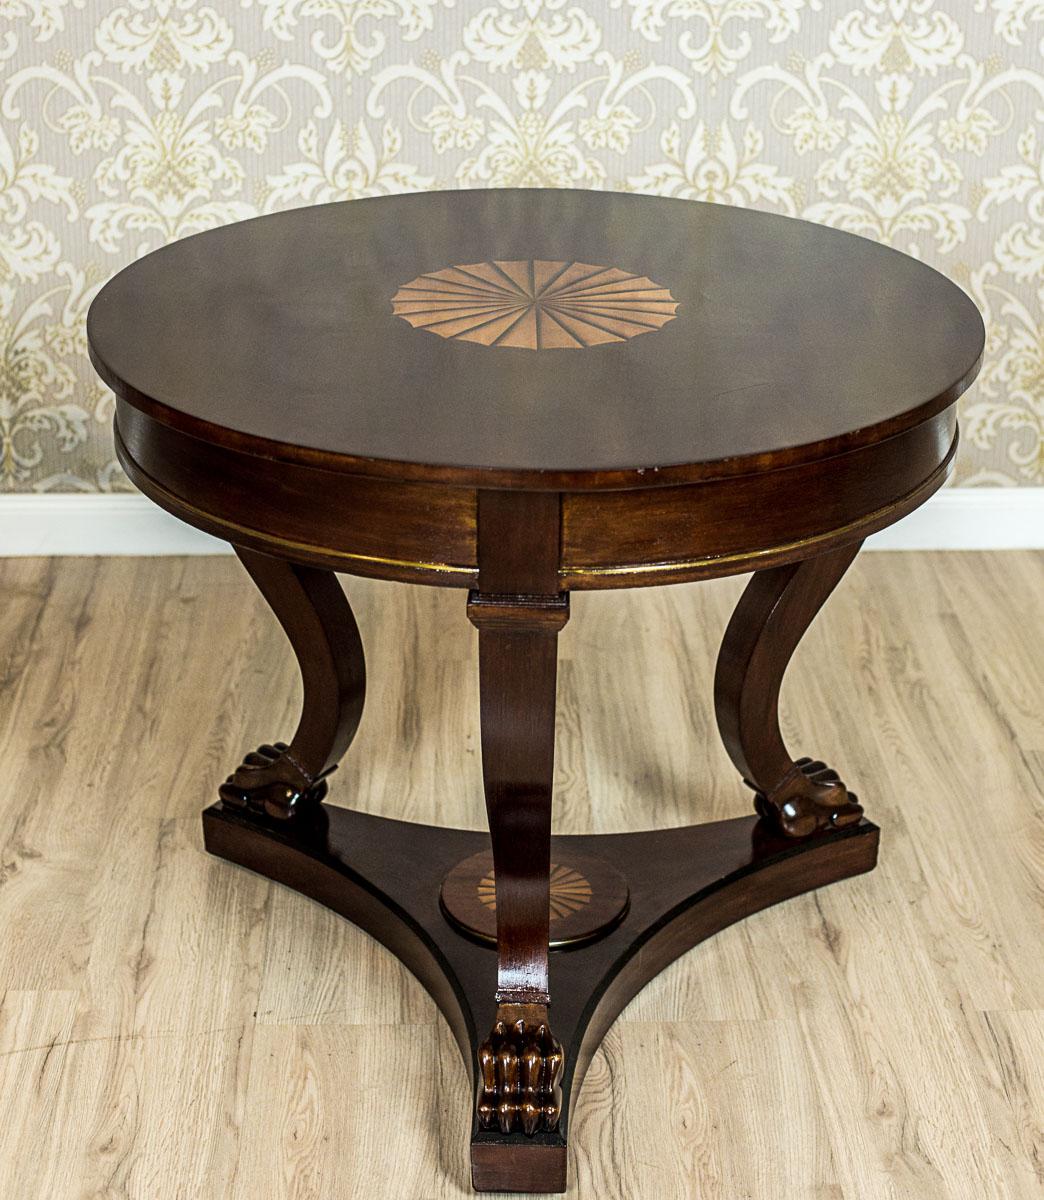 Wir präsentieren Ihnen dieses Wohnzimmermöbel-Set, bestehend aus einem runden Tisch und vier Stühlen.
Diese Suite stammt aus den 1950er Jahren und ist im Biedermeier-Stil gehalten.
Der runde Tisch wird von drei Bugholzbeinen getragen, die auf